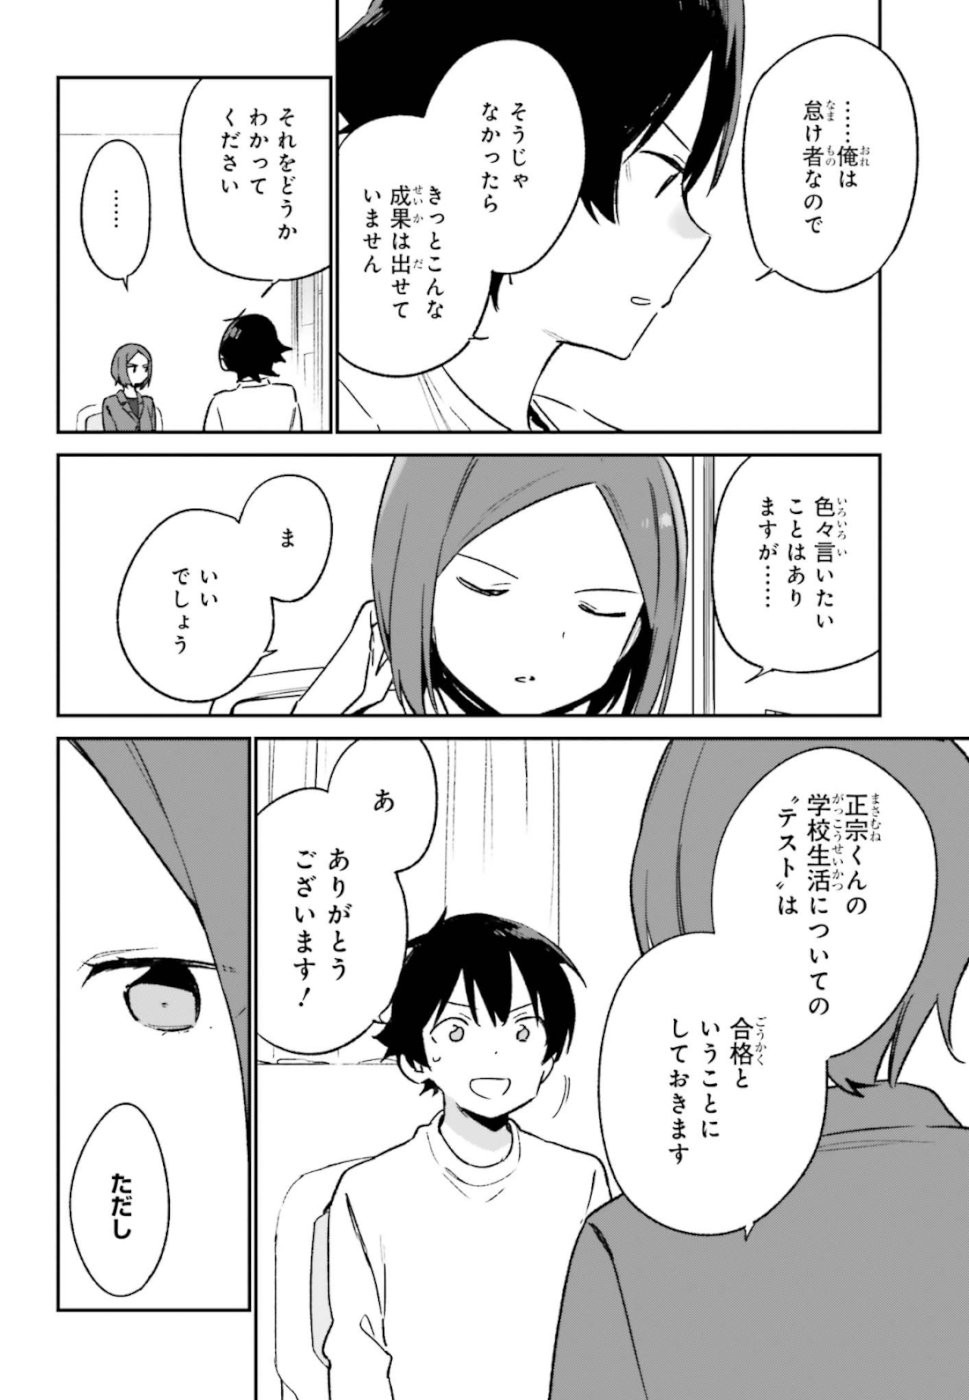 Ero Manga Sensei - Chapter 59 - Page 14